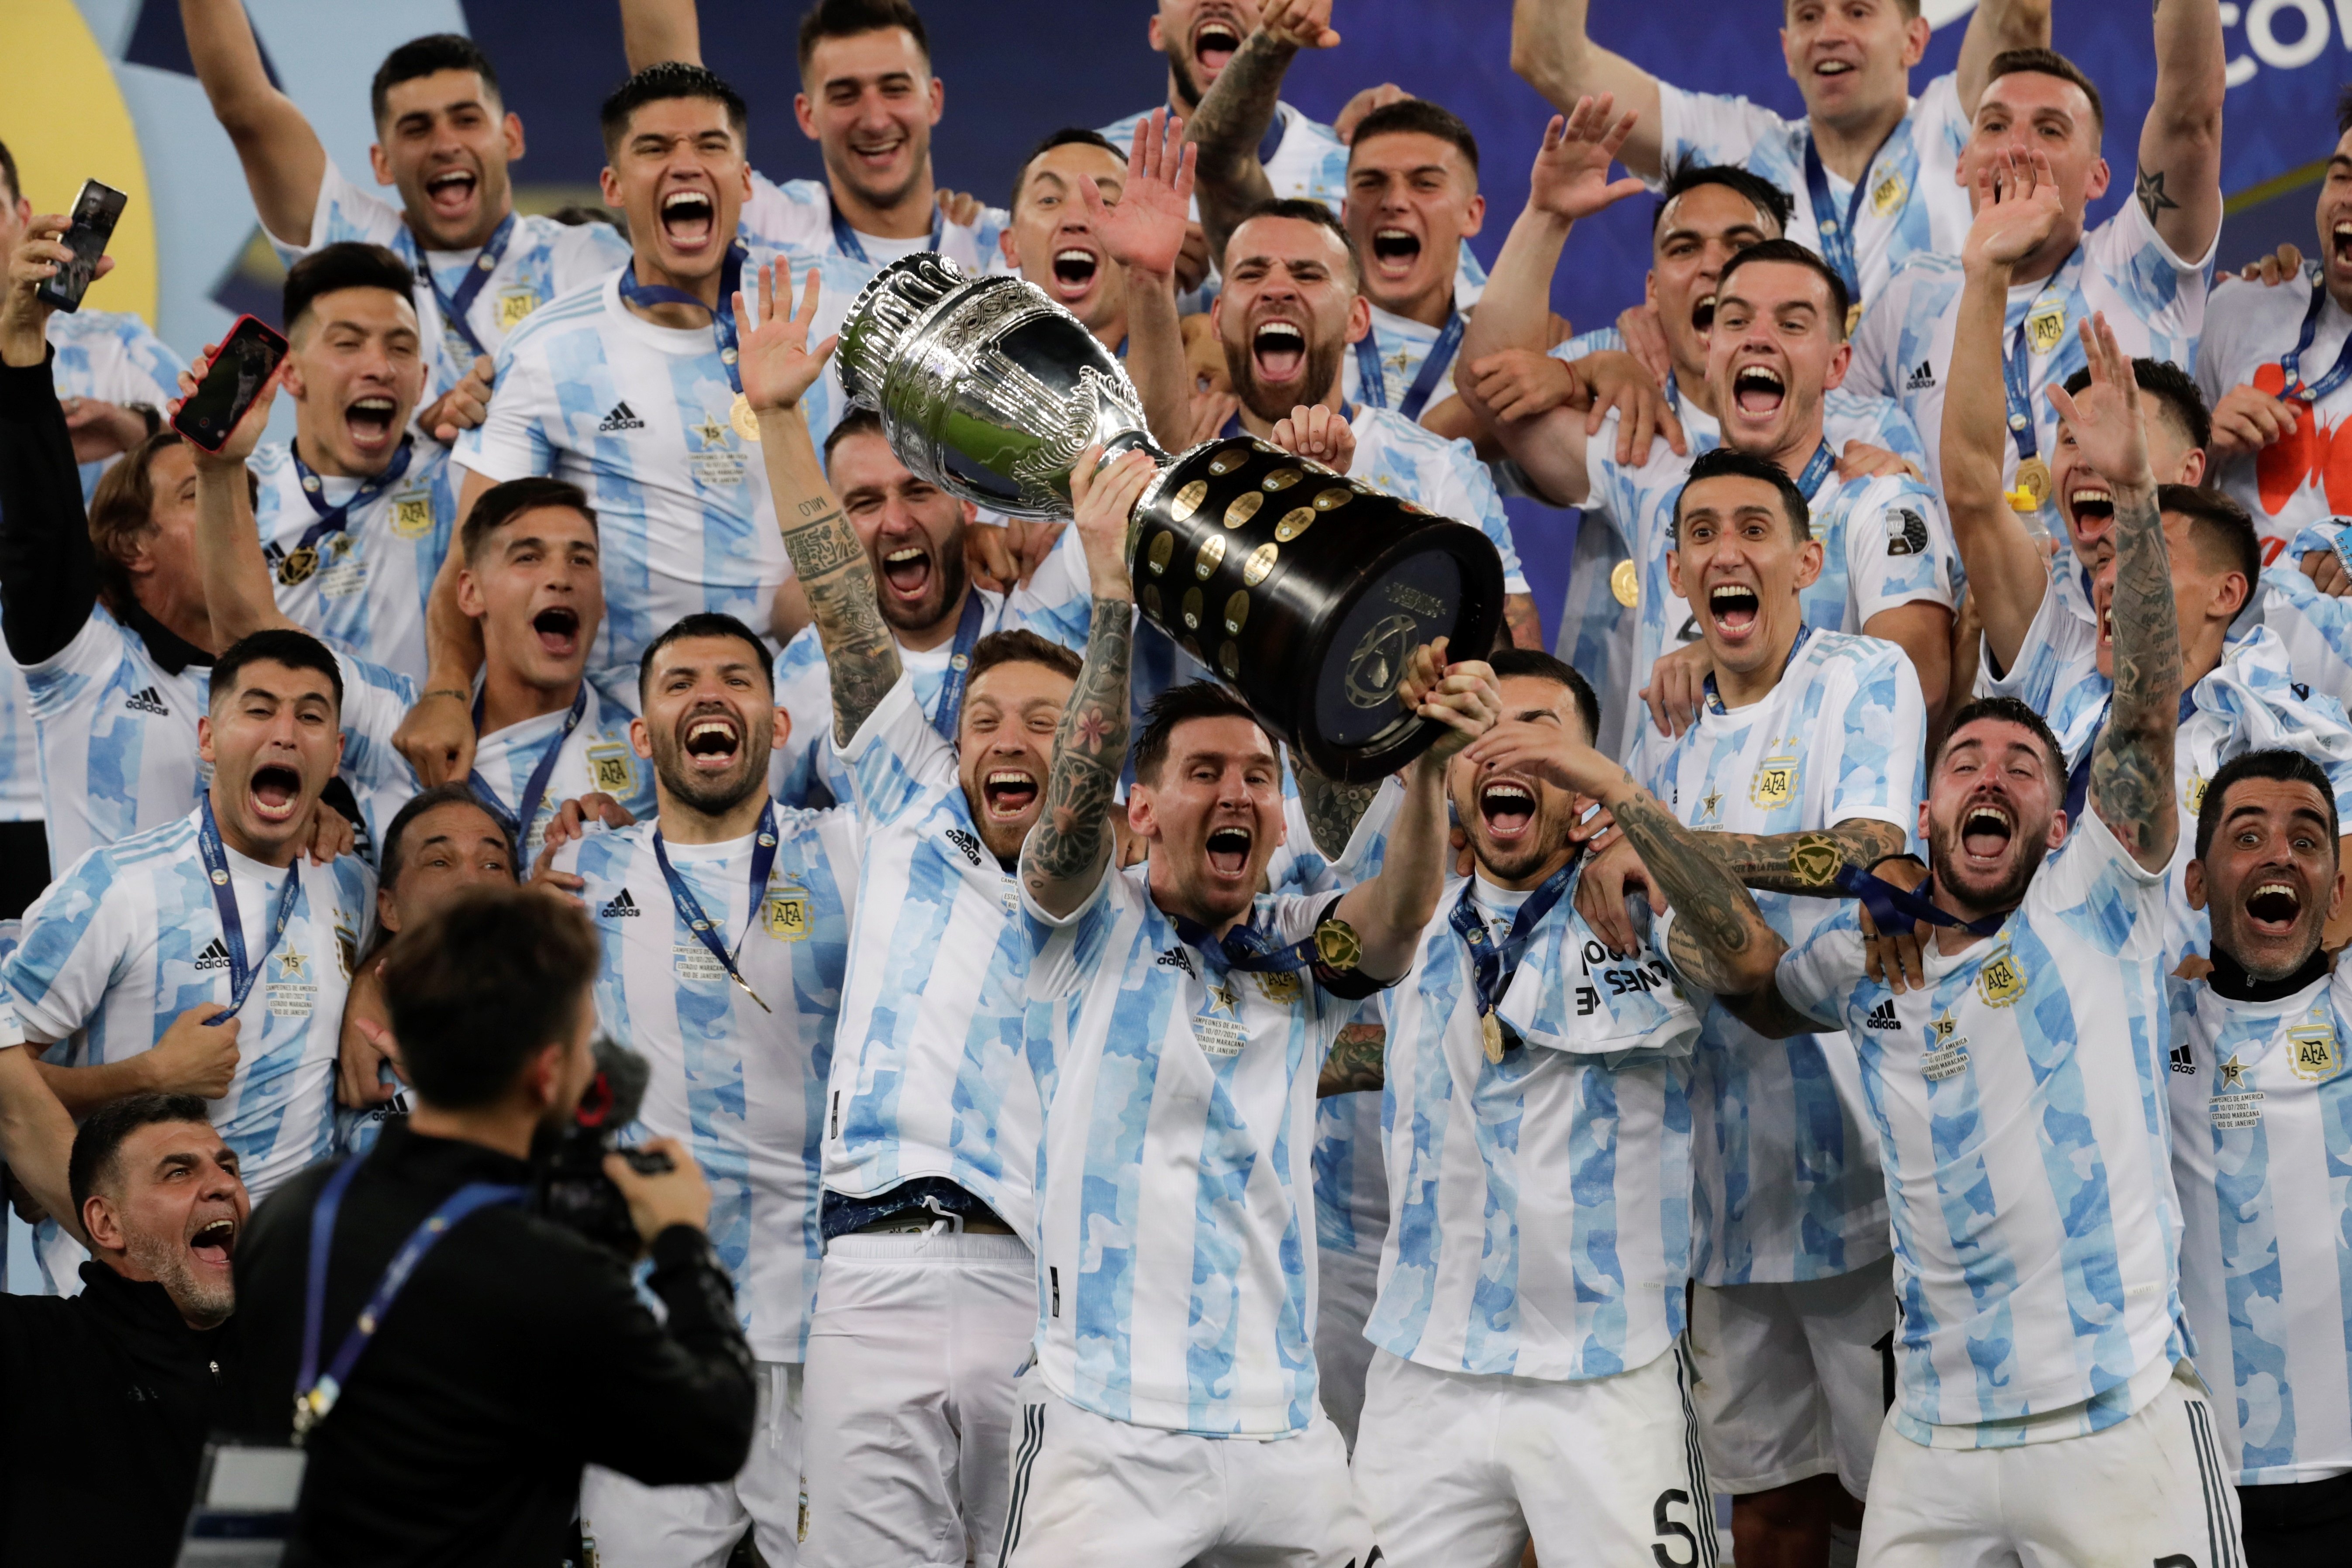 L'Argentina guanya la Copa Amèrica i Messi ja té el primer títol (1-0)